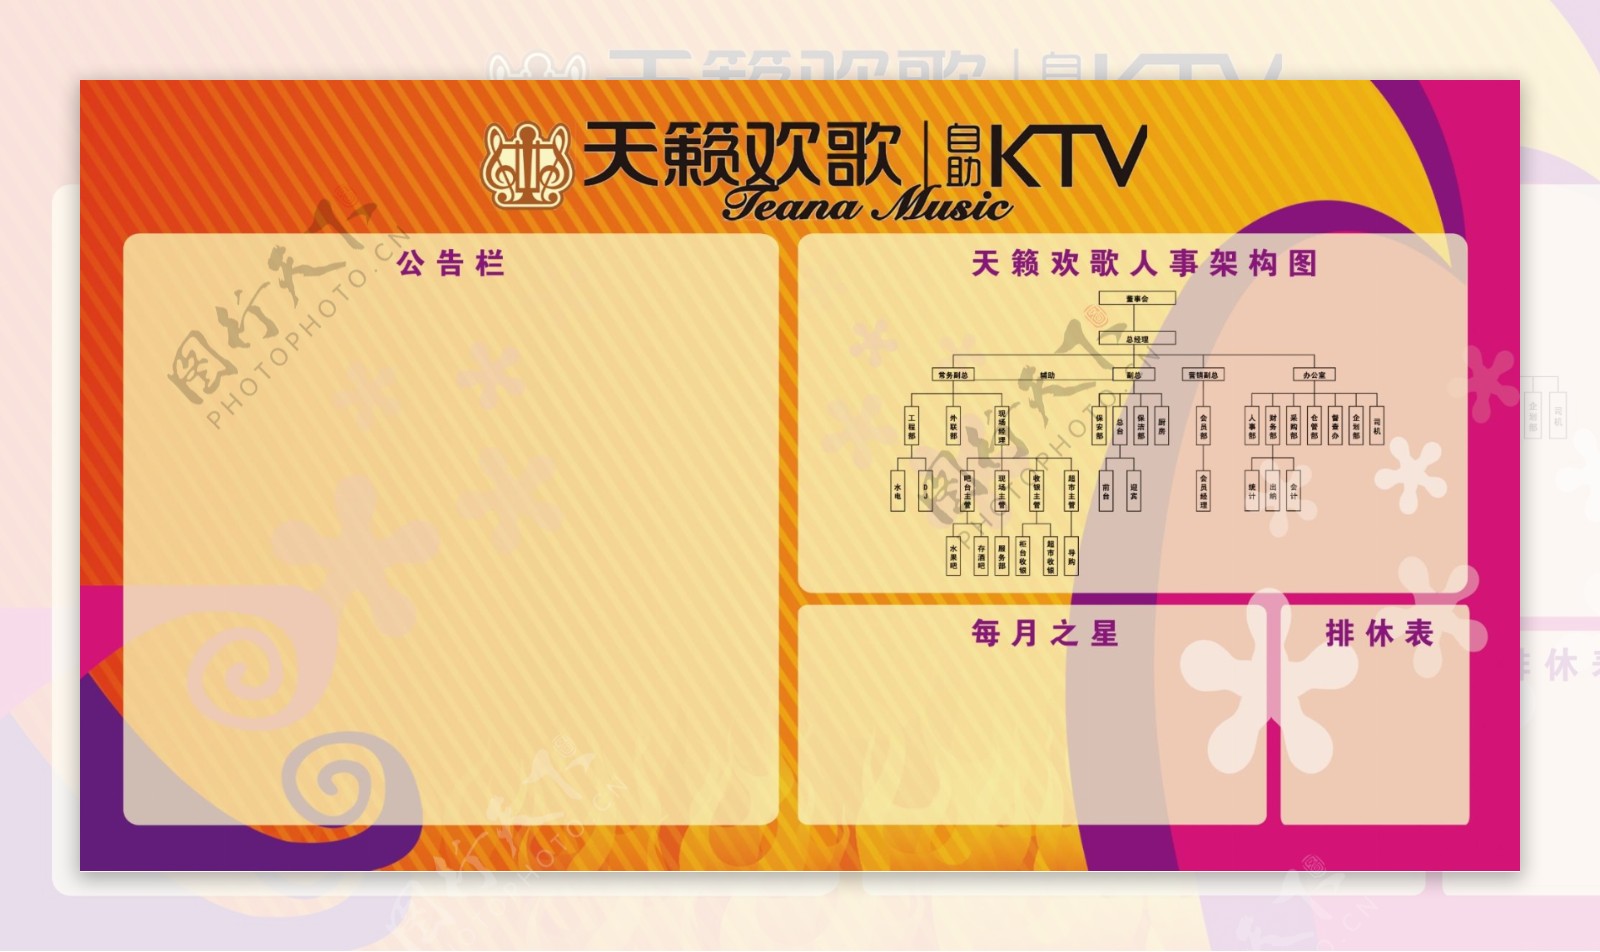 天籁欢歌KTV公告栏宣传栏图片